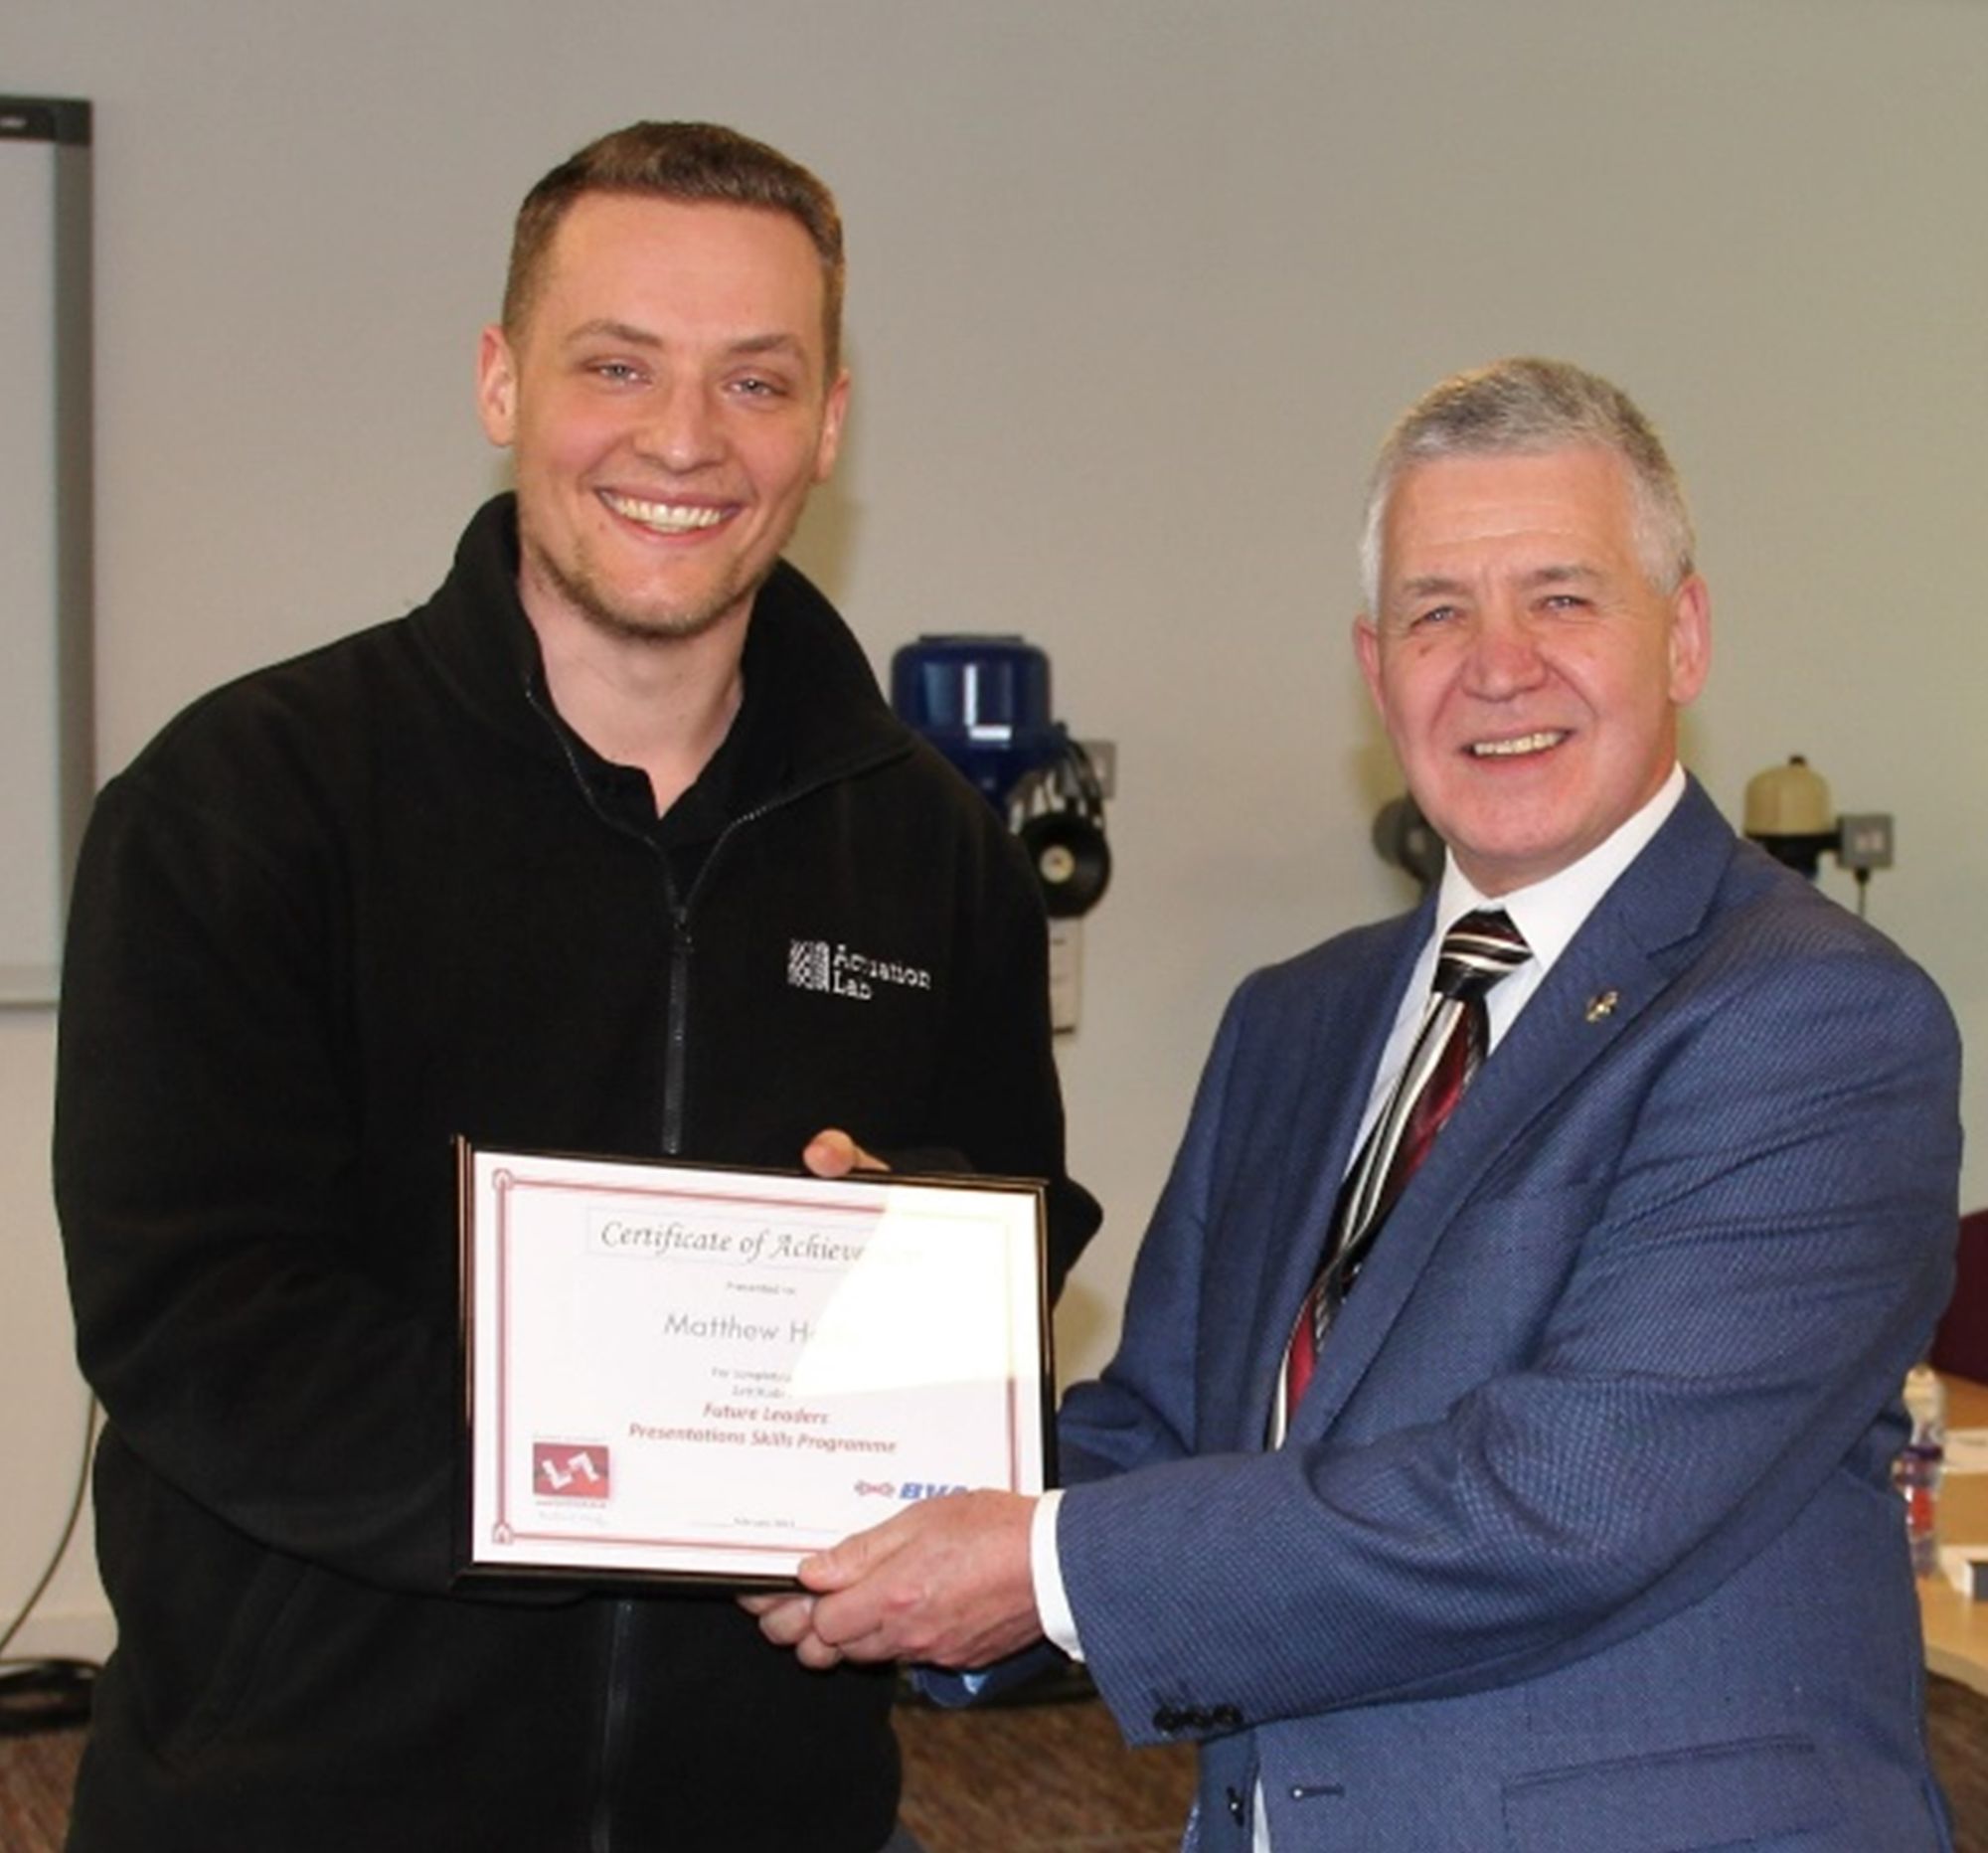 R&D Engineer Matthew Hollis receiving a Certificate of Achievement from Dr Martin Haigh